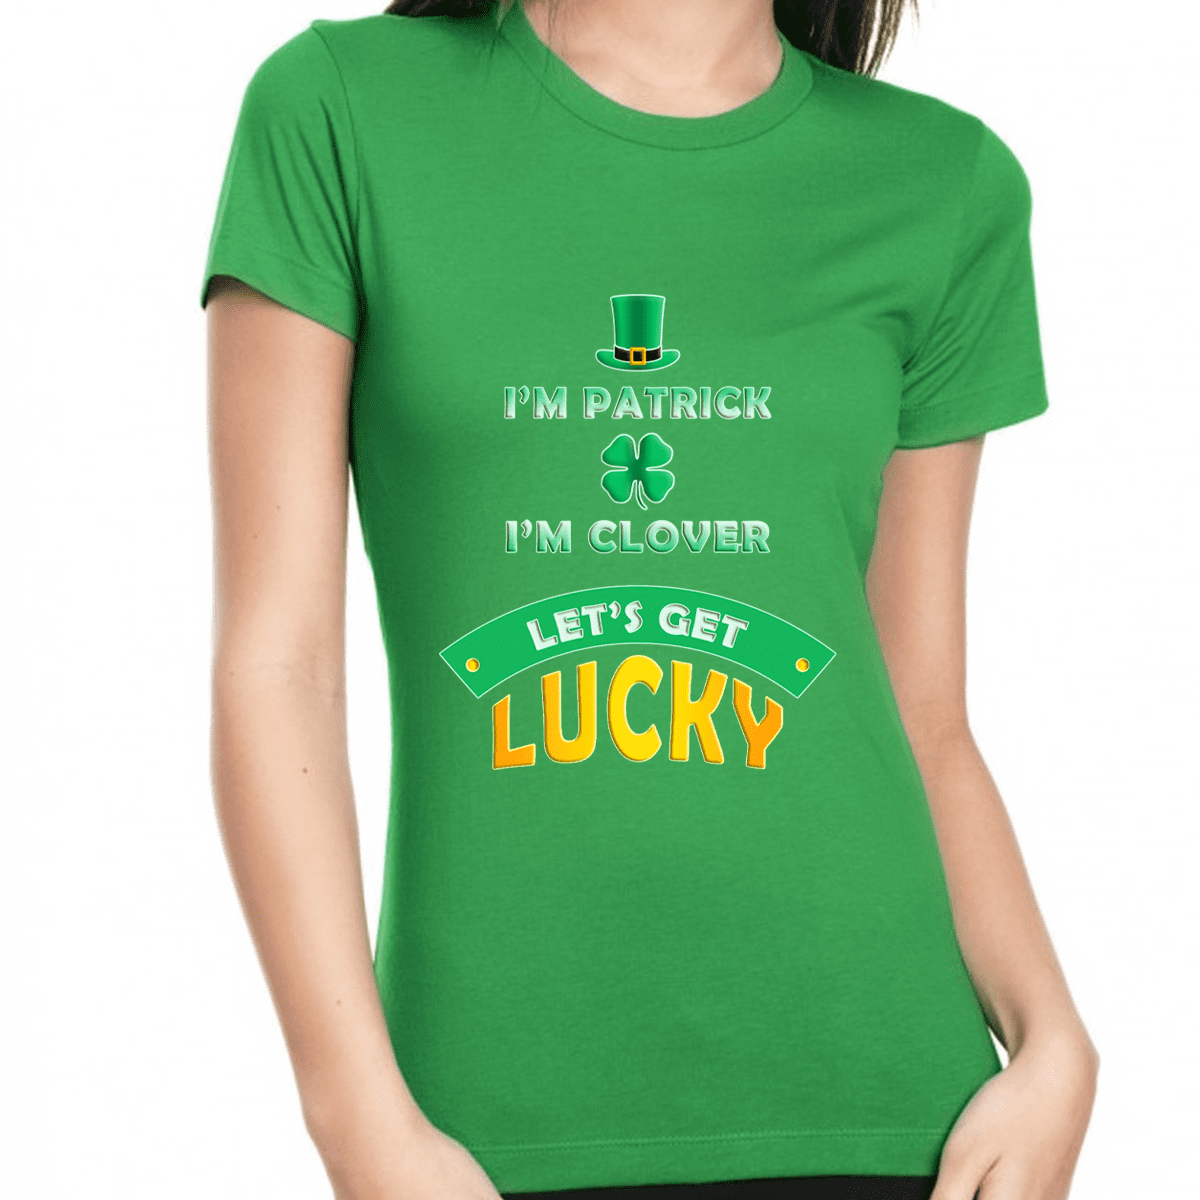 Cute St Patricks Day Shirt Irish Luck of the Irish Tee Shamrock Shirt St Pattys Tee Kiss Me Shirt Lucky Womens St Patricks Day Shirt